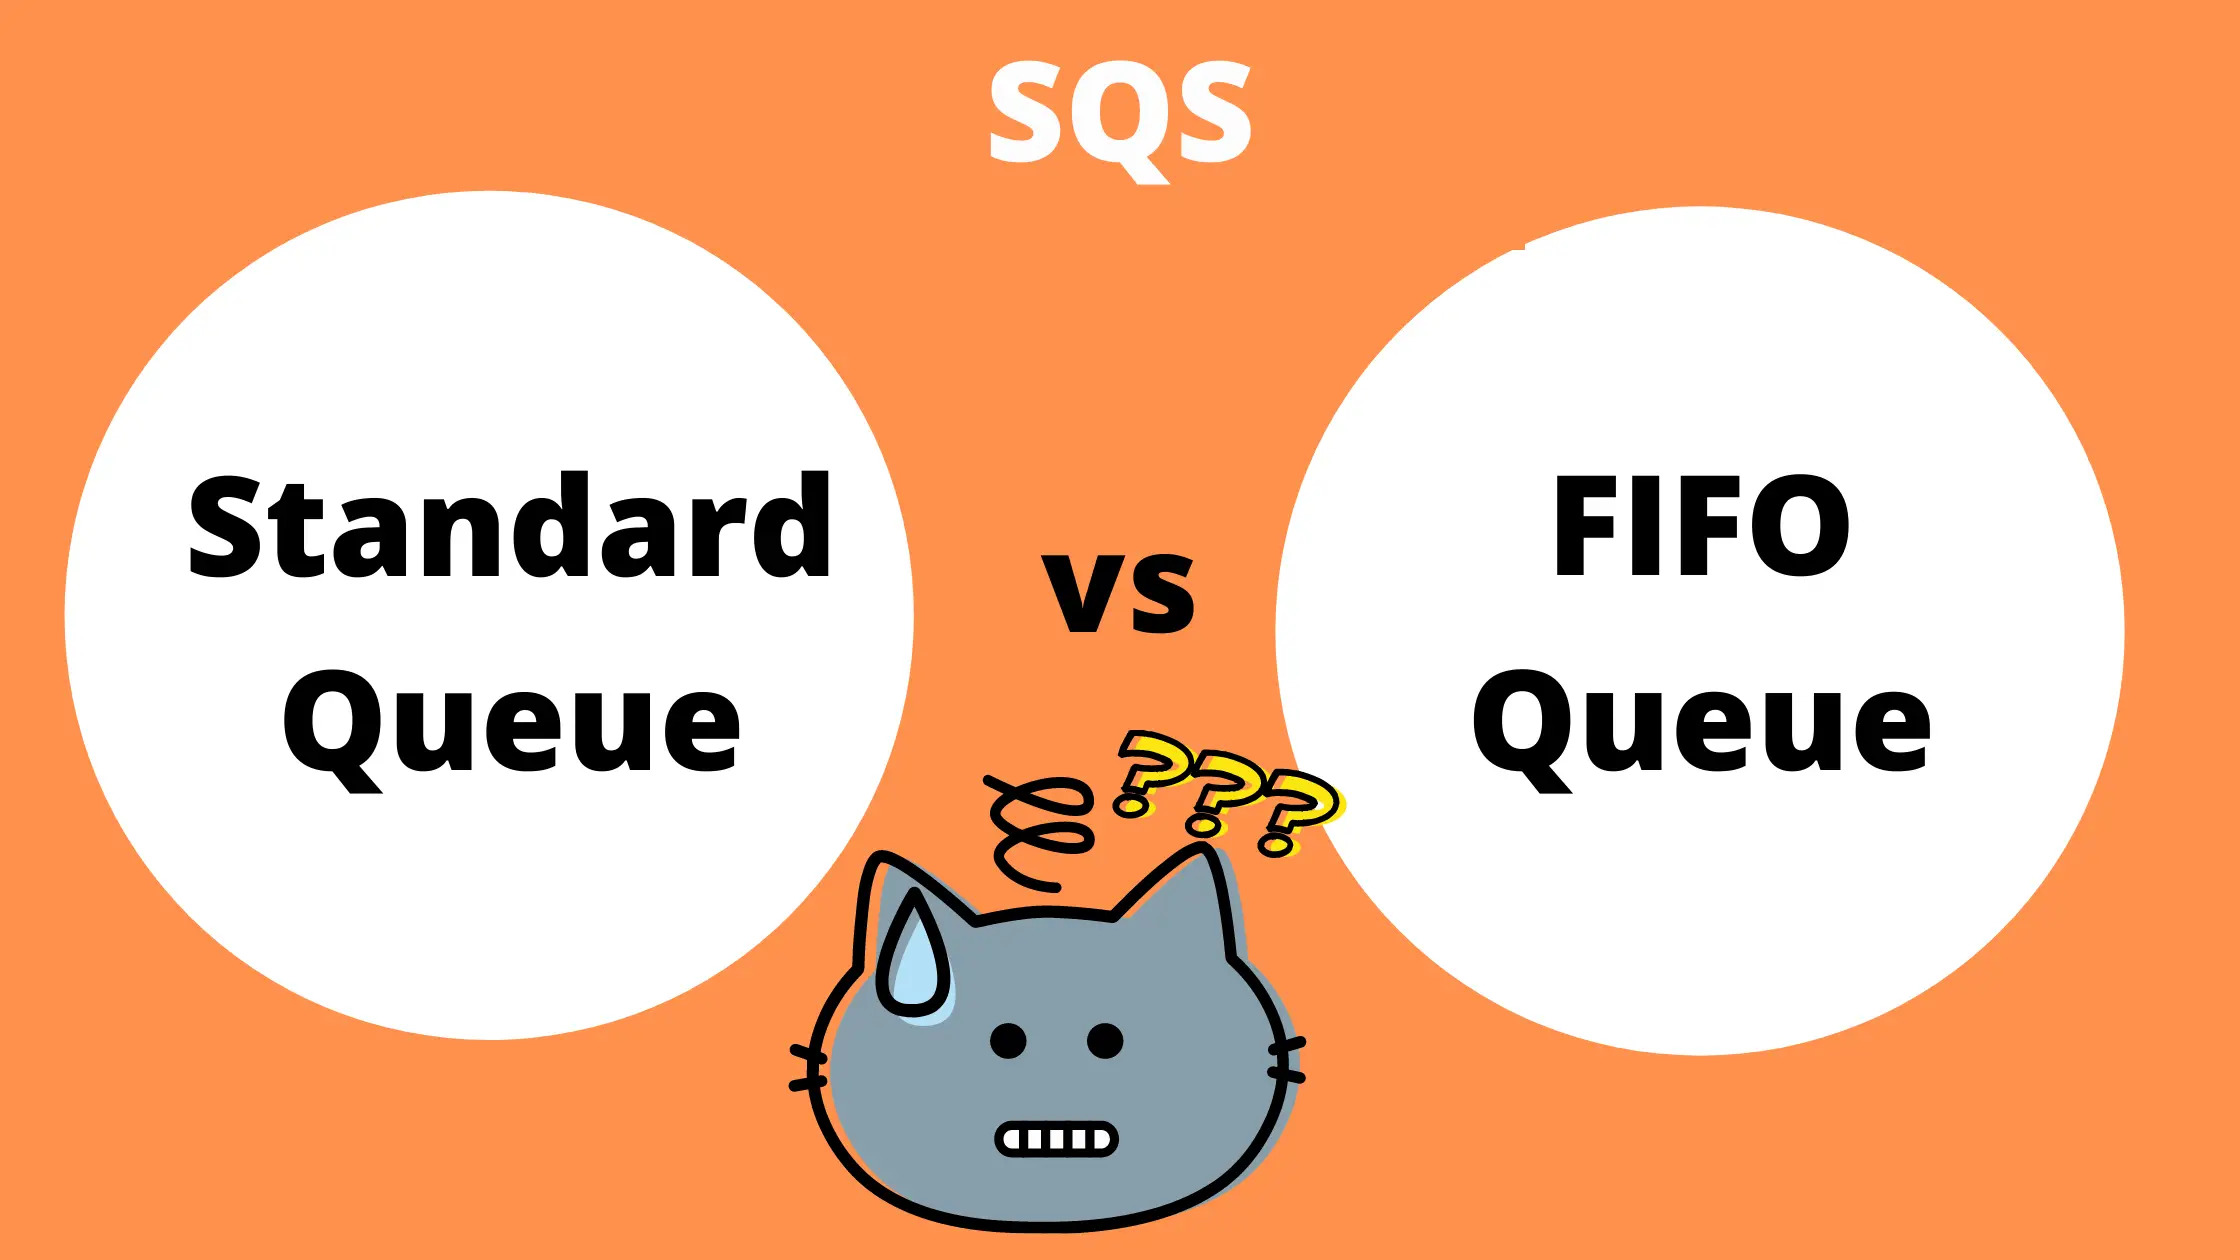 sqs standard vs fifo queue